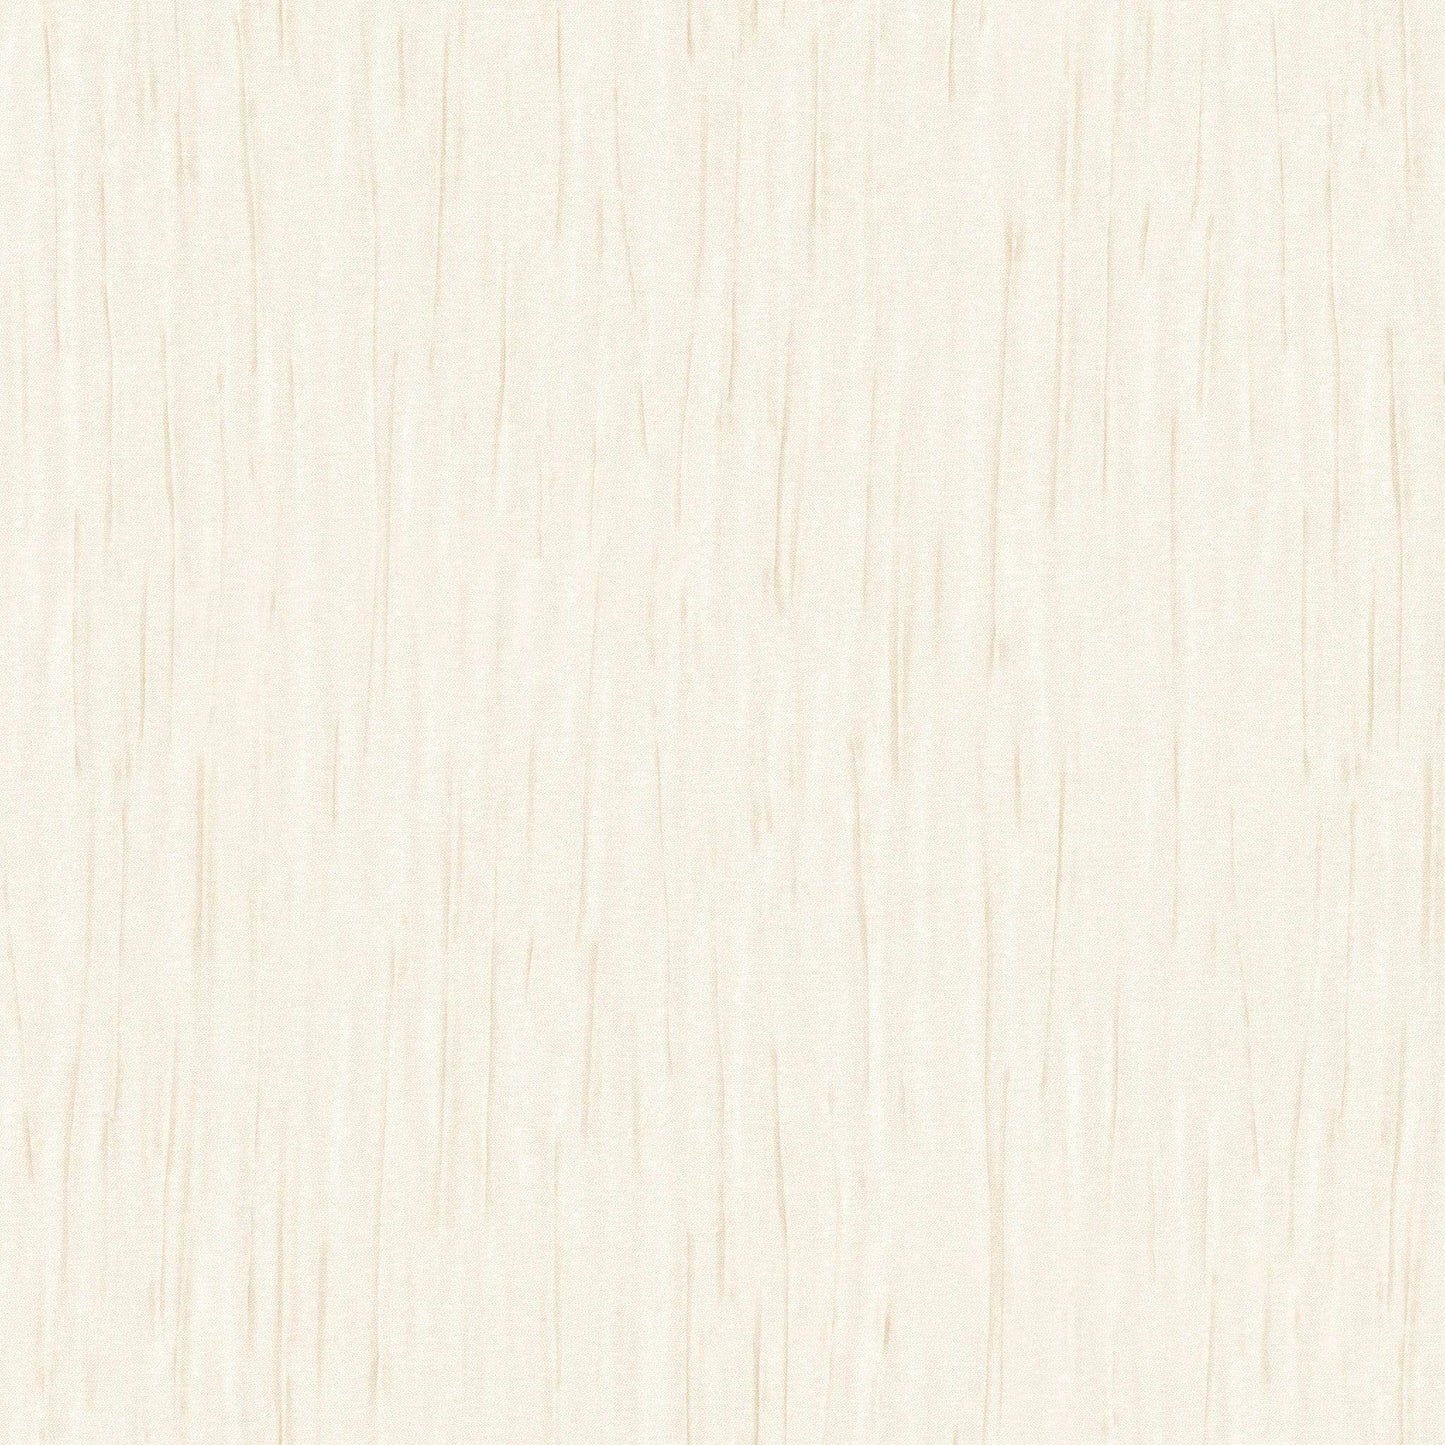 Wallpaper  -  Holden Francesco Champagne Wallpaper - 33721  -  50154755